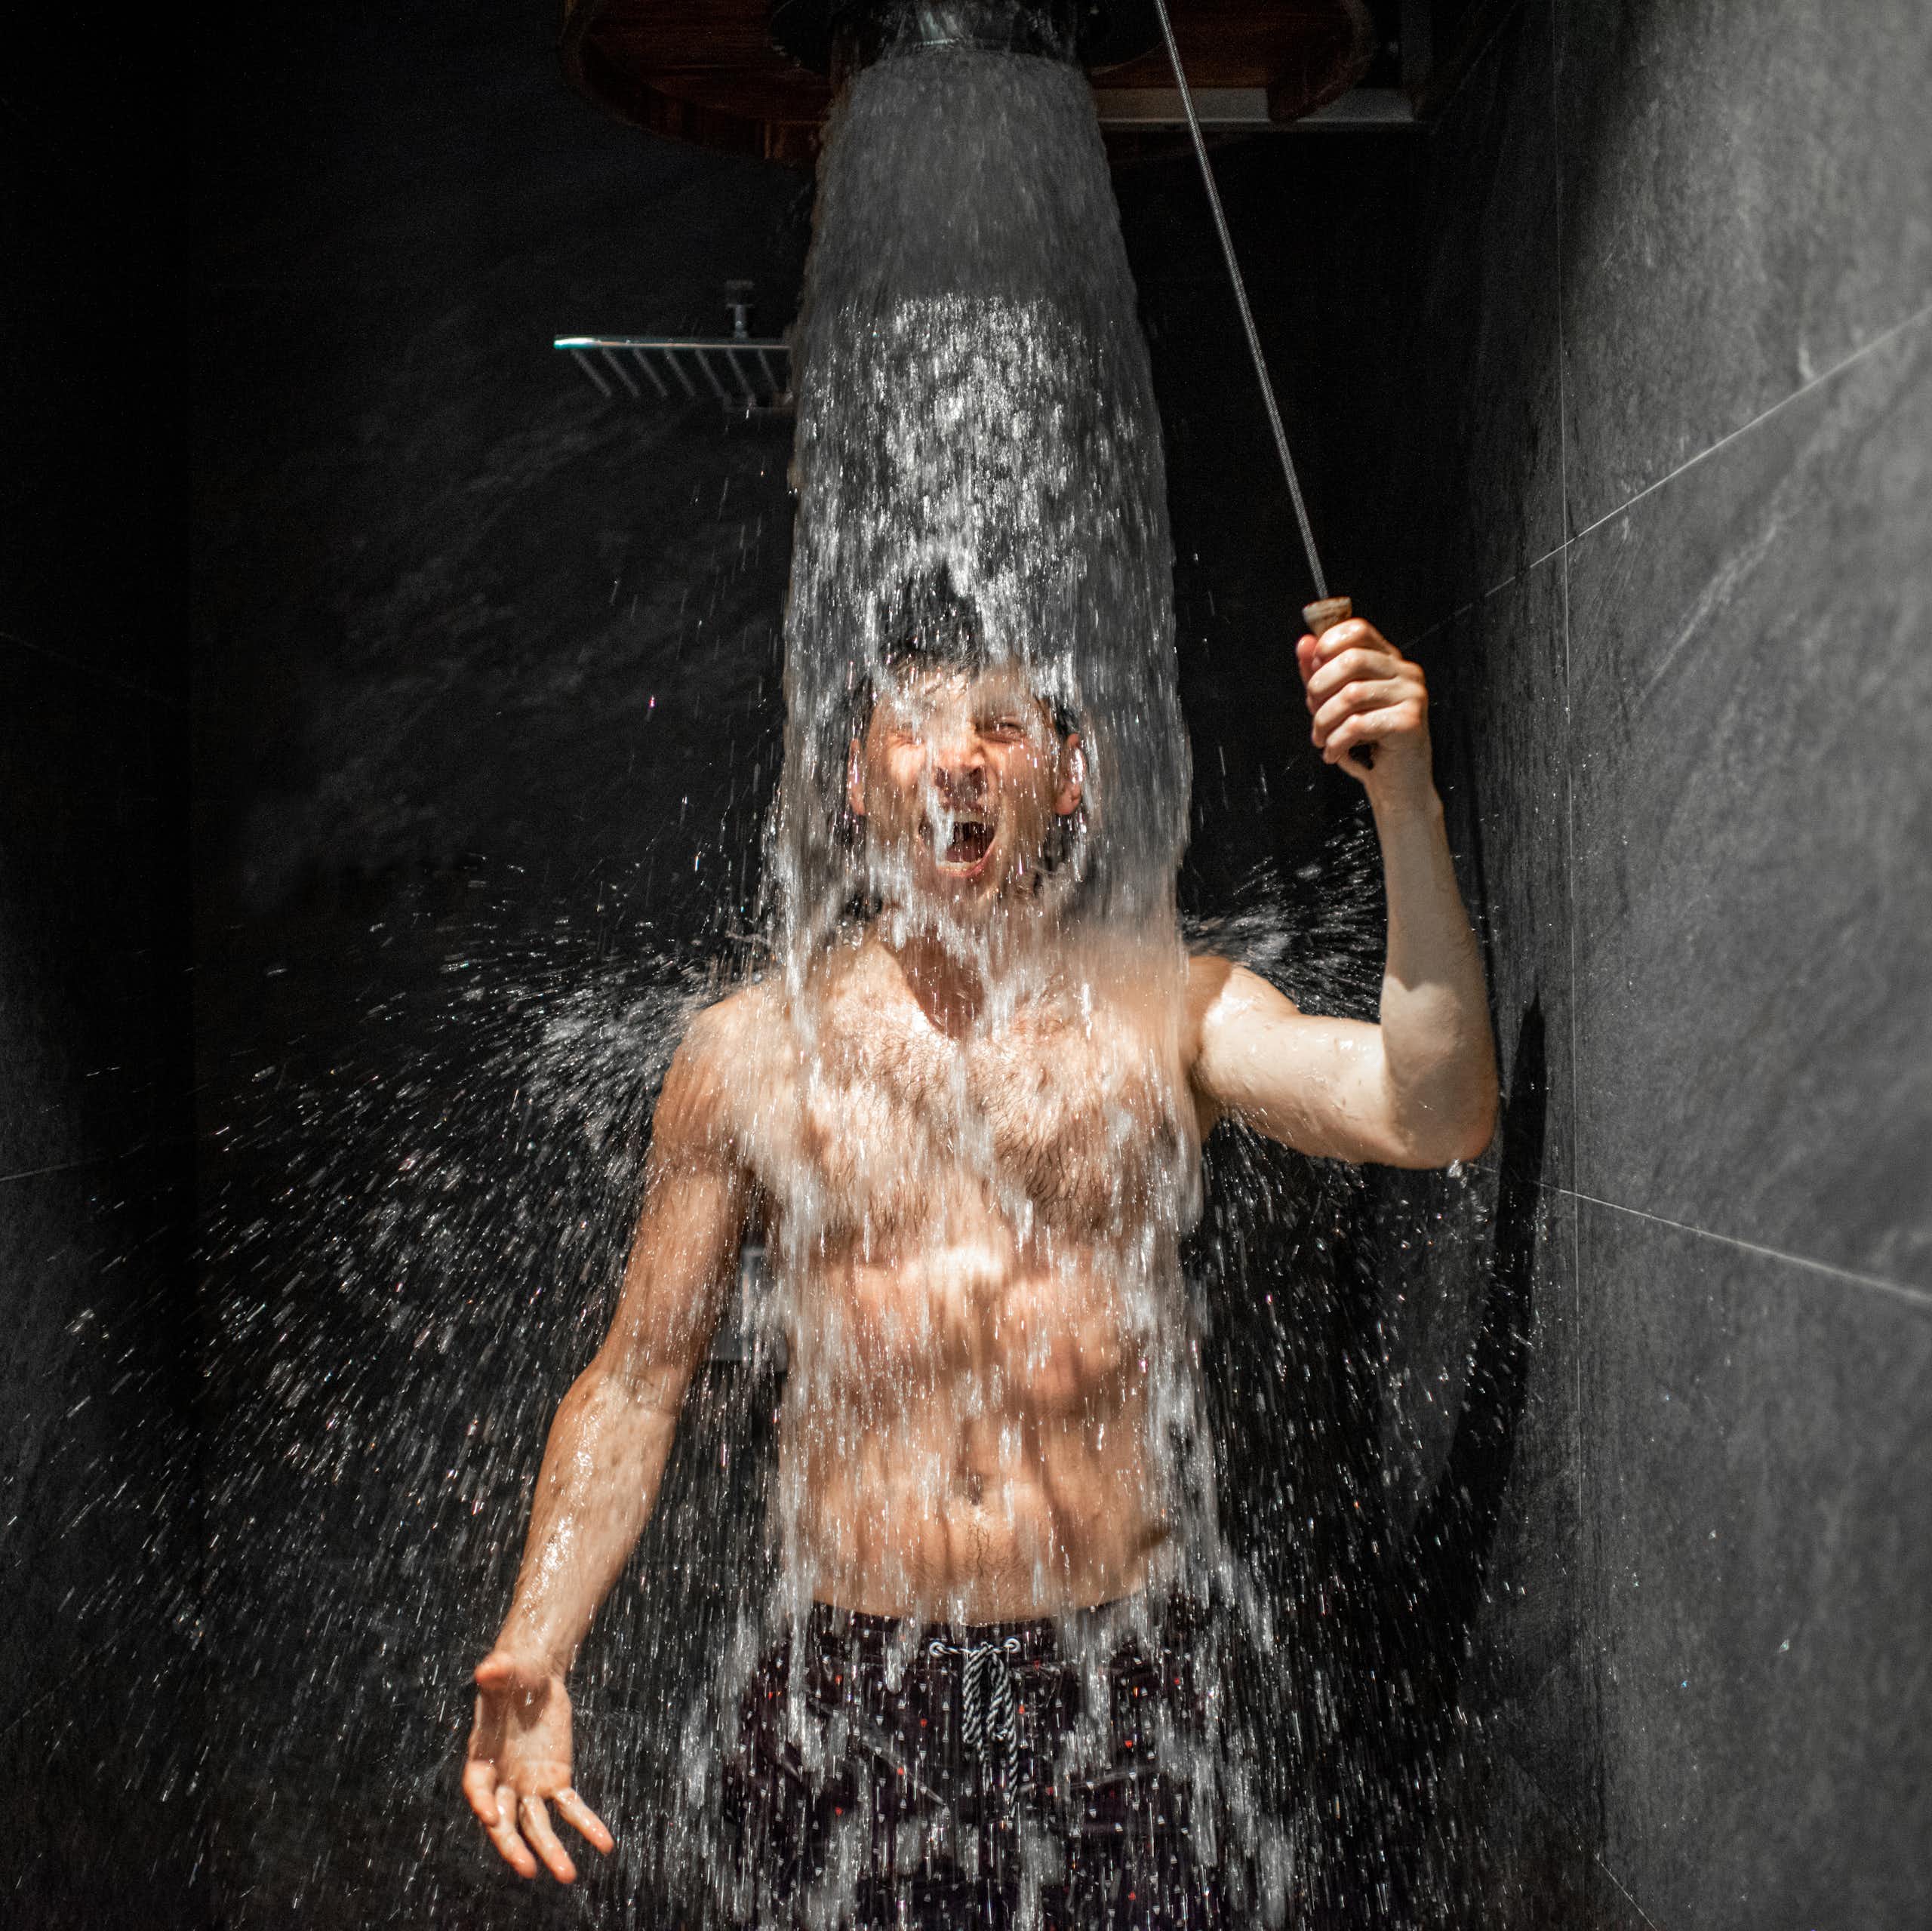 Un jeune homme prend une douche visiblement fraiche.